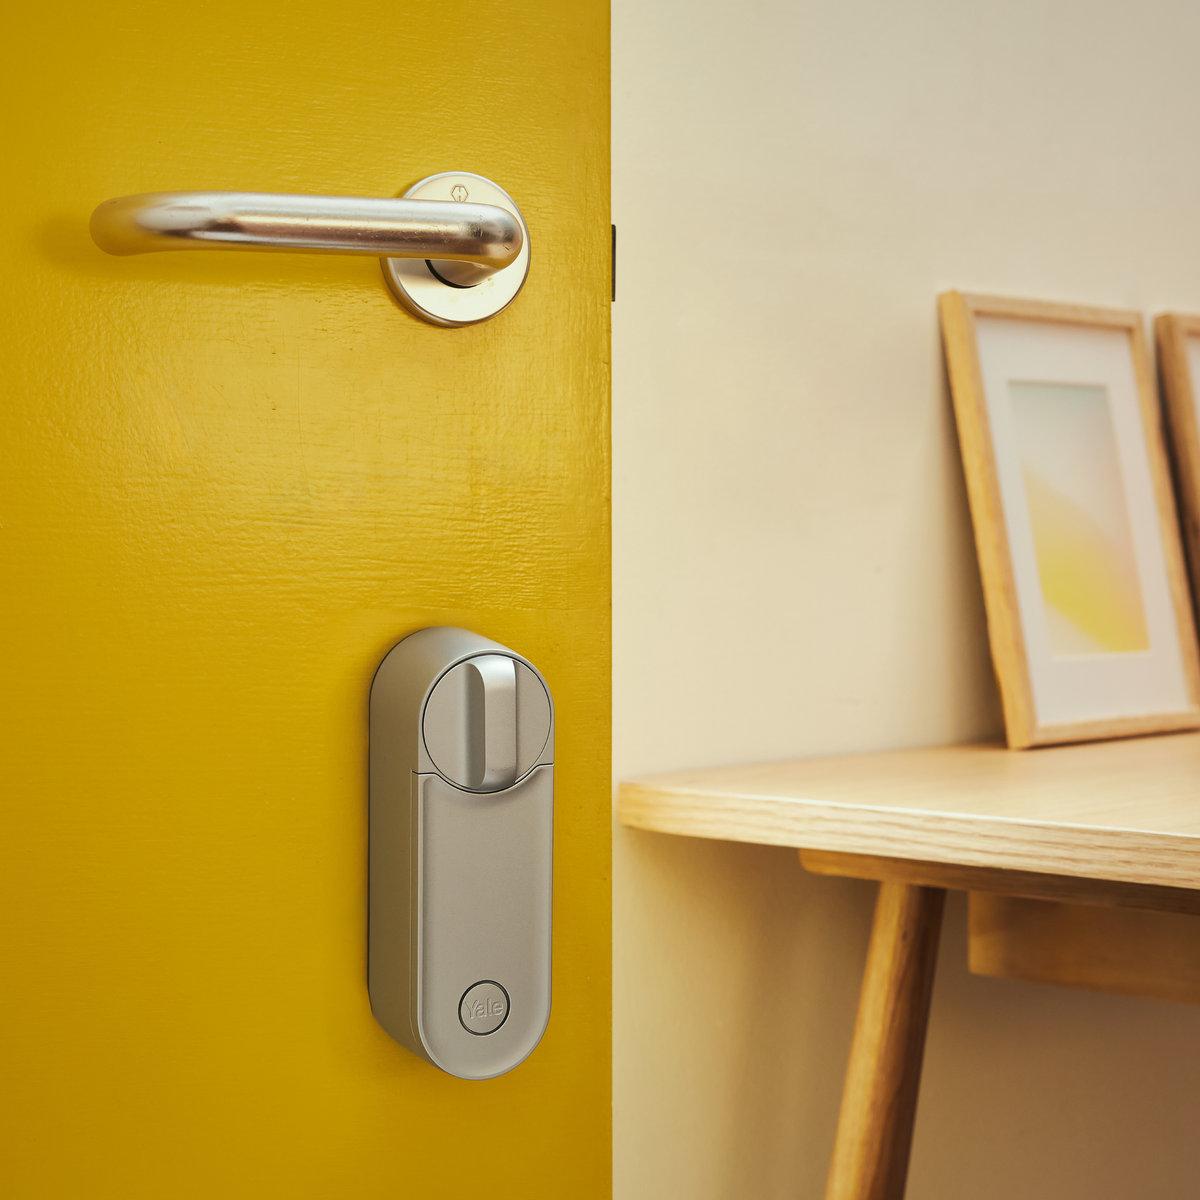 Inteligentny zamek Yale Linus® Smart Lock L2 - minimalistyczny design i elegancja, którą dopasujesz do każdych drzwi